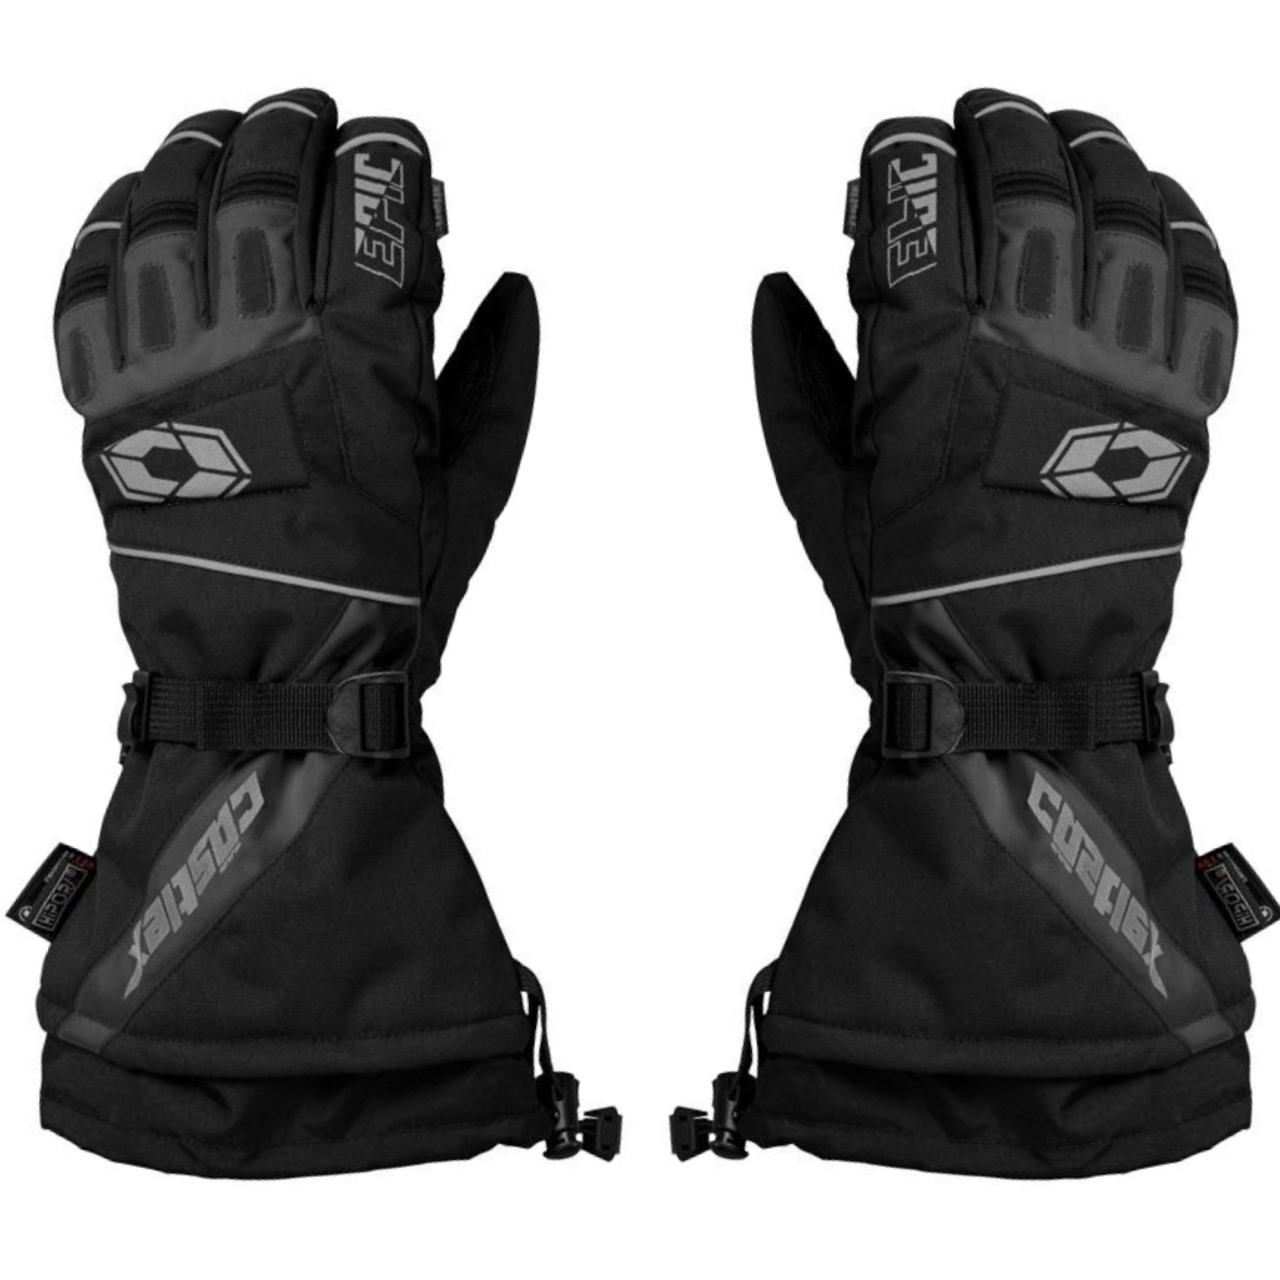 Castle X New Black/Charcoal Epic Plus Men's X-Large Snow Gloves, 74-6068